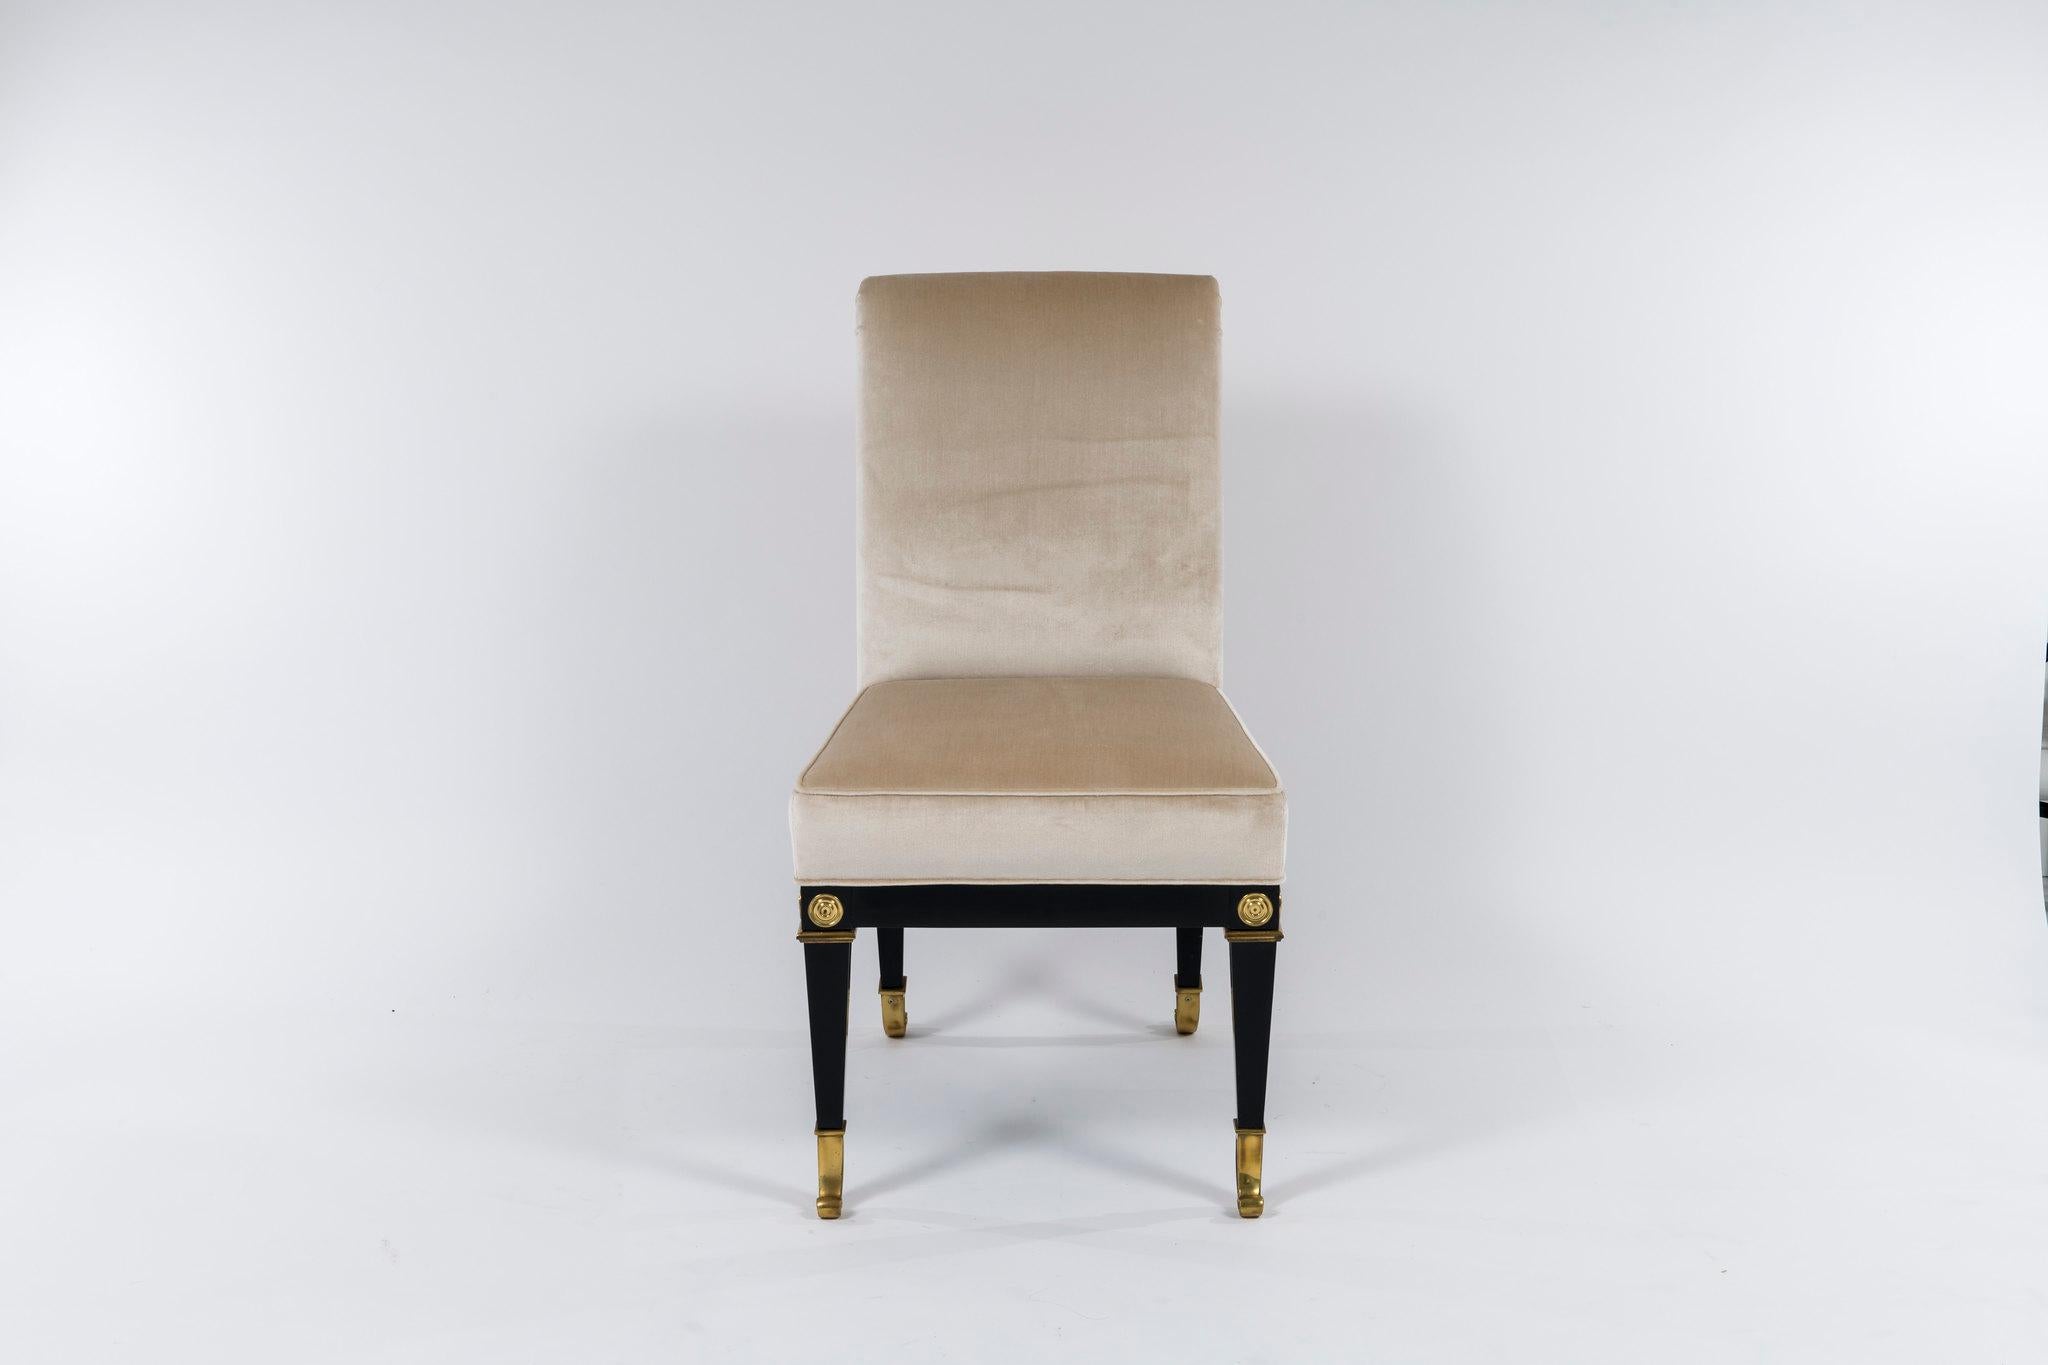 Ensemble de 8 chaises de salle à manger vintage Mastercraft de style néoclassique. Ces chaises ébénisées à sabots en bronze ont été récemment modifiées et tapissées professionnellement dans un velours de soie Donghia champagne

Dimensions :
La